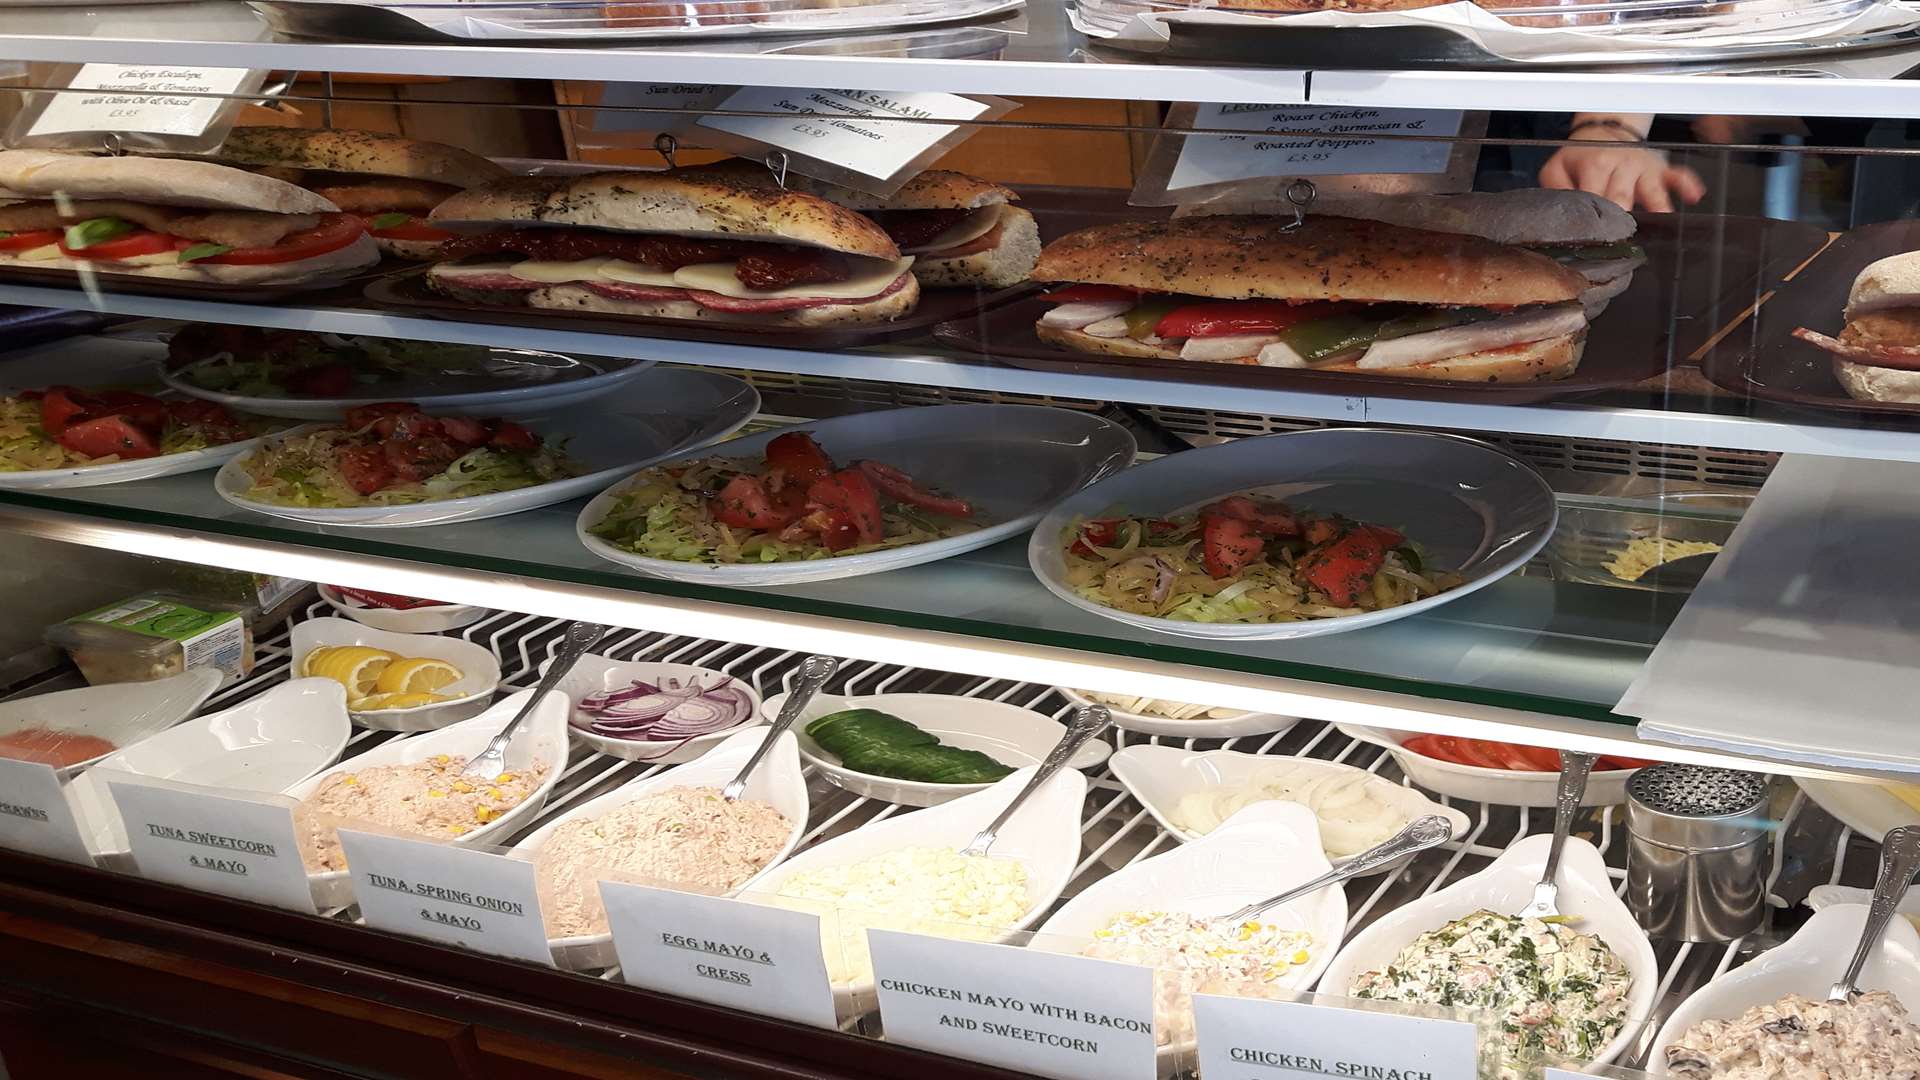 Leonardo's Sandwich Bar offers European-inspired dishes.